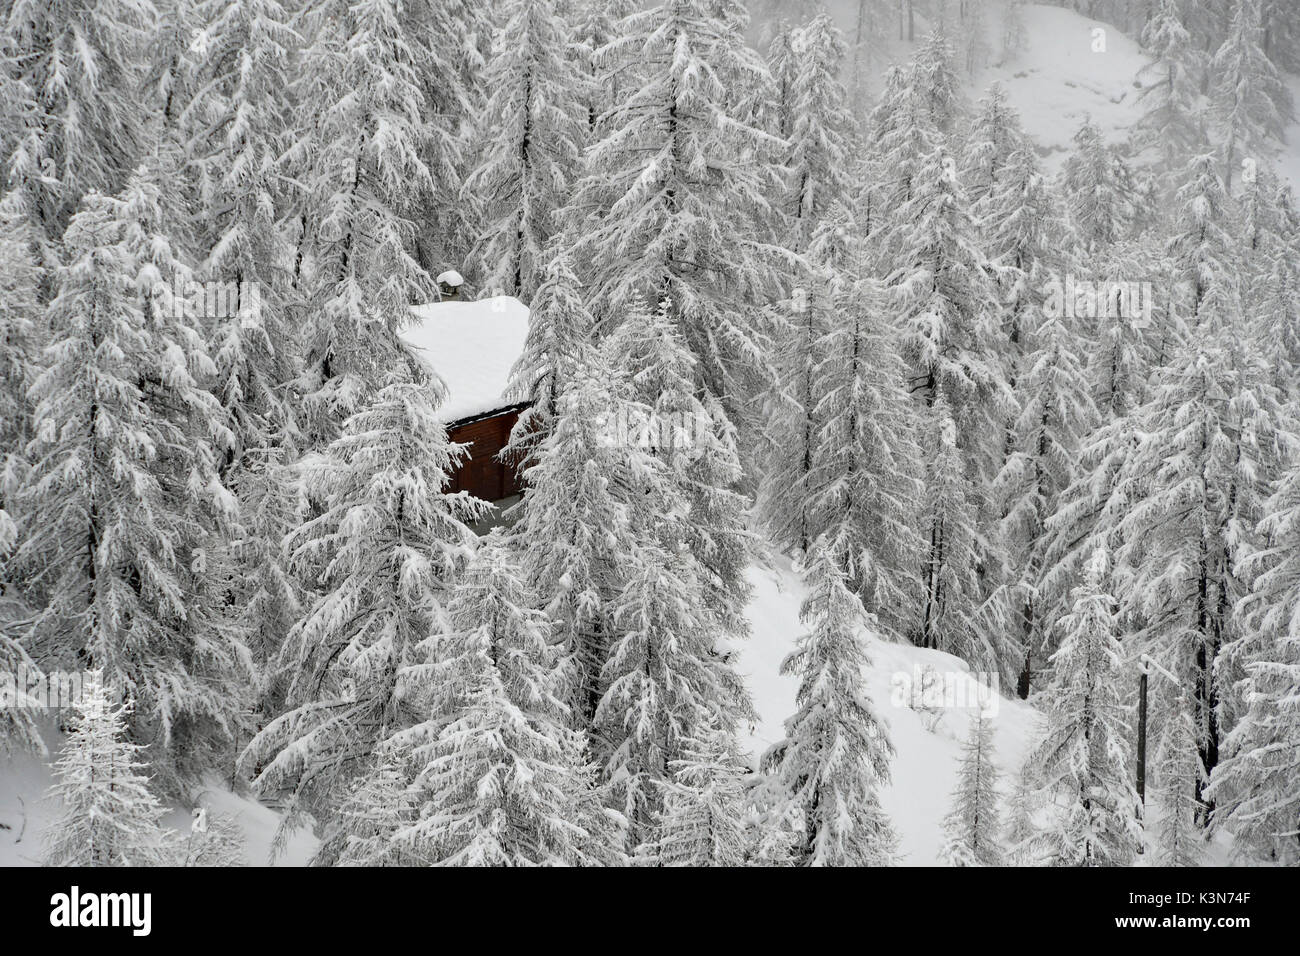 Chalet dans une forêt enneigée,Gressonay Vallée, vallée d'aoste, Italie Banque D'Images